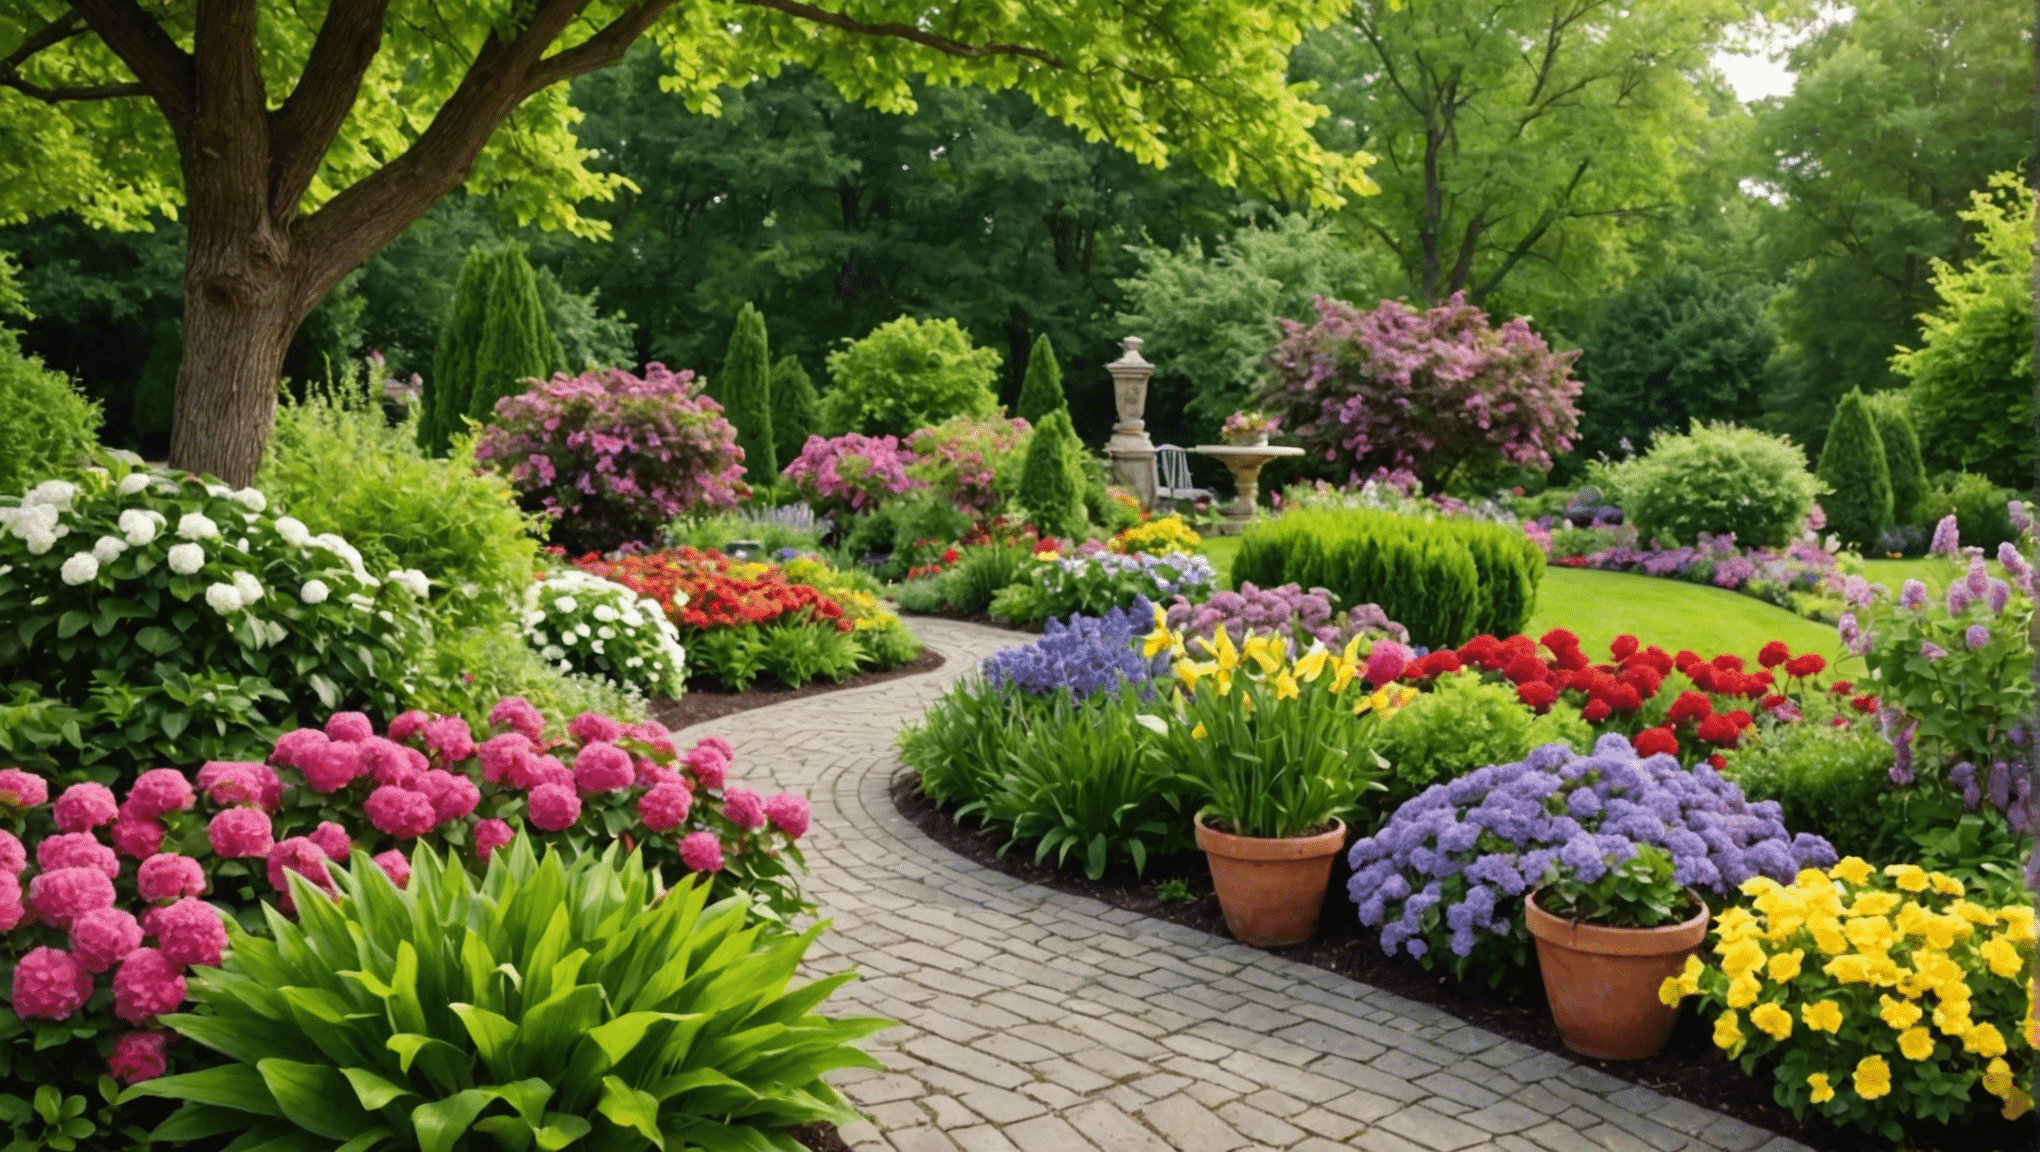 découvrez les meilleures idées de jardinage d'été pour rehausser votre espace extérieur. Des compositions florales vibrantes aux pratiques durables innovantes, trouvez l'inspiration pour cultiver un jardin prospère cette saison.